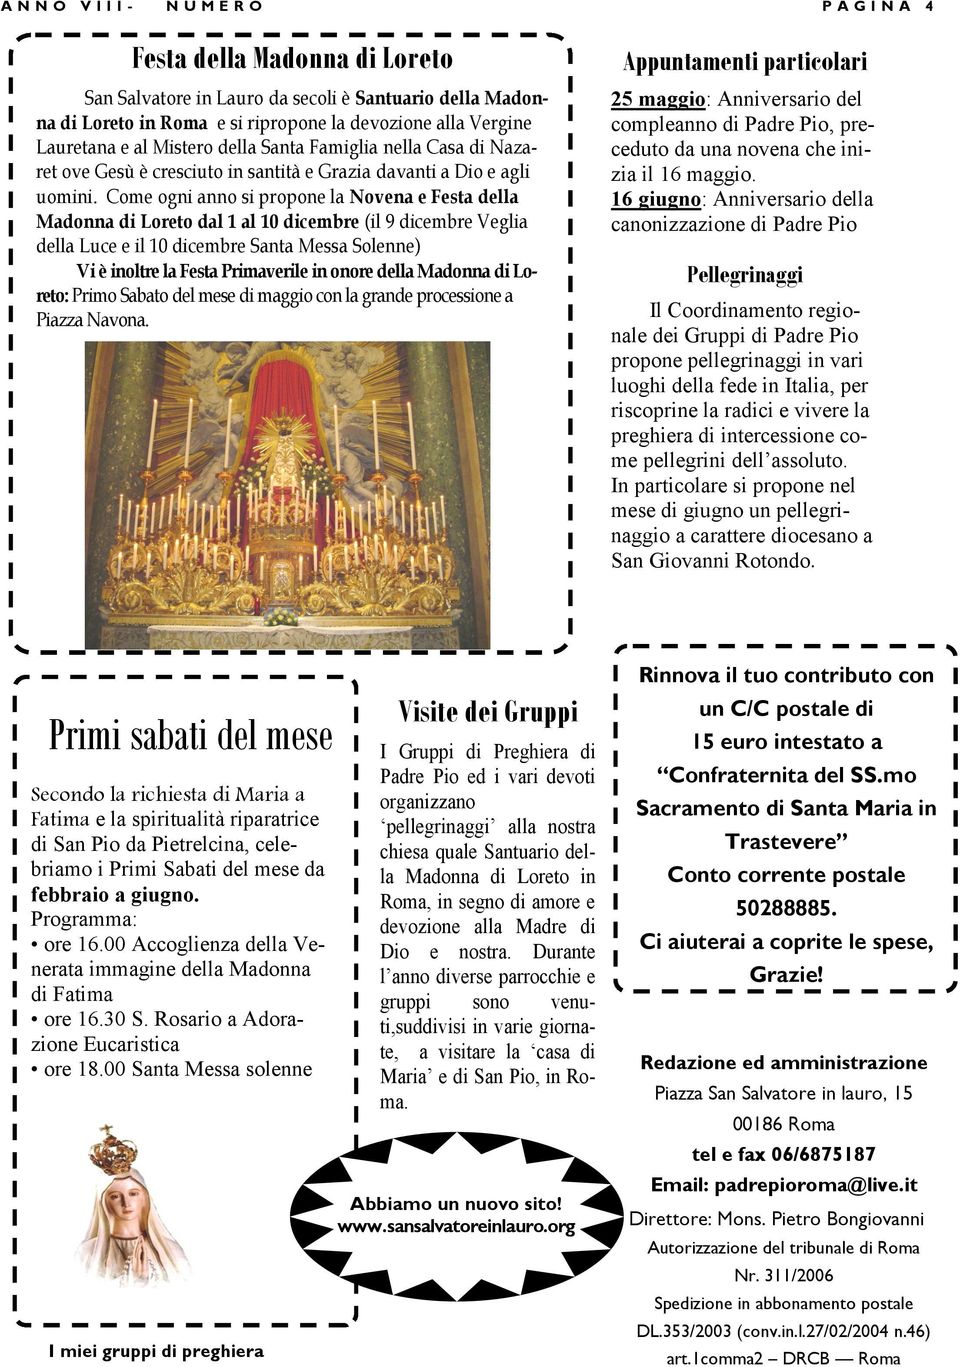 Come ogni anno si propone la Novena e Festa della Madonna di Loreto dal 1 al 10 dicembre (il 9 dicembre Veglia della Luce e il 10 dicembre Santa Messa Solenne) Vi è inoltre la Festa Primaverile in